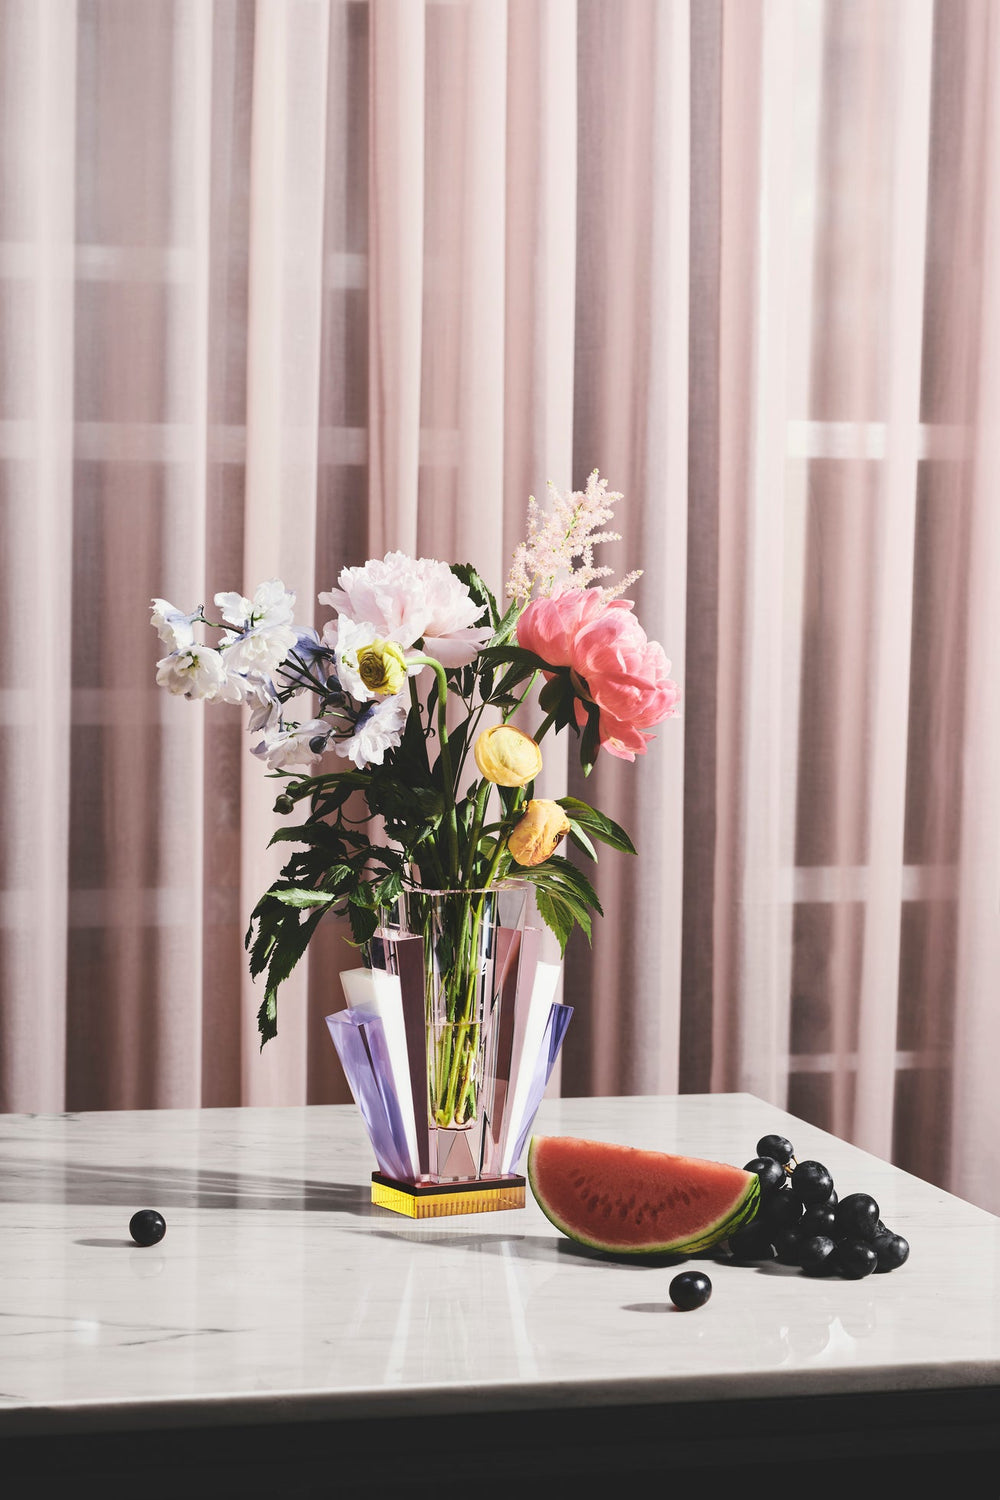 Vas i klar, rosa, lila och gul kristall med blommor i, stående på marmorbord tillsammans med frukt och med en rosa gardin i bakgrunden.